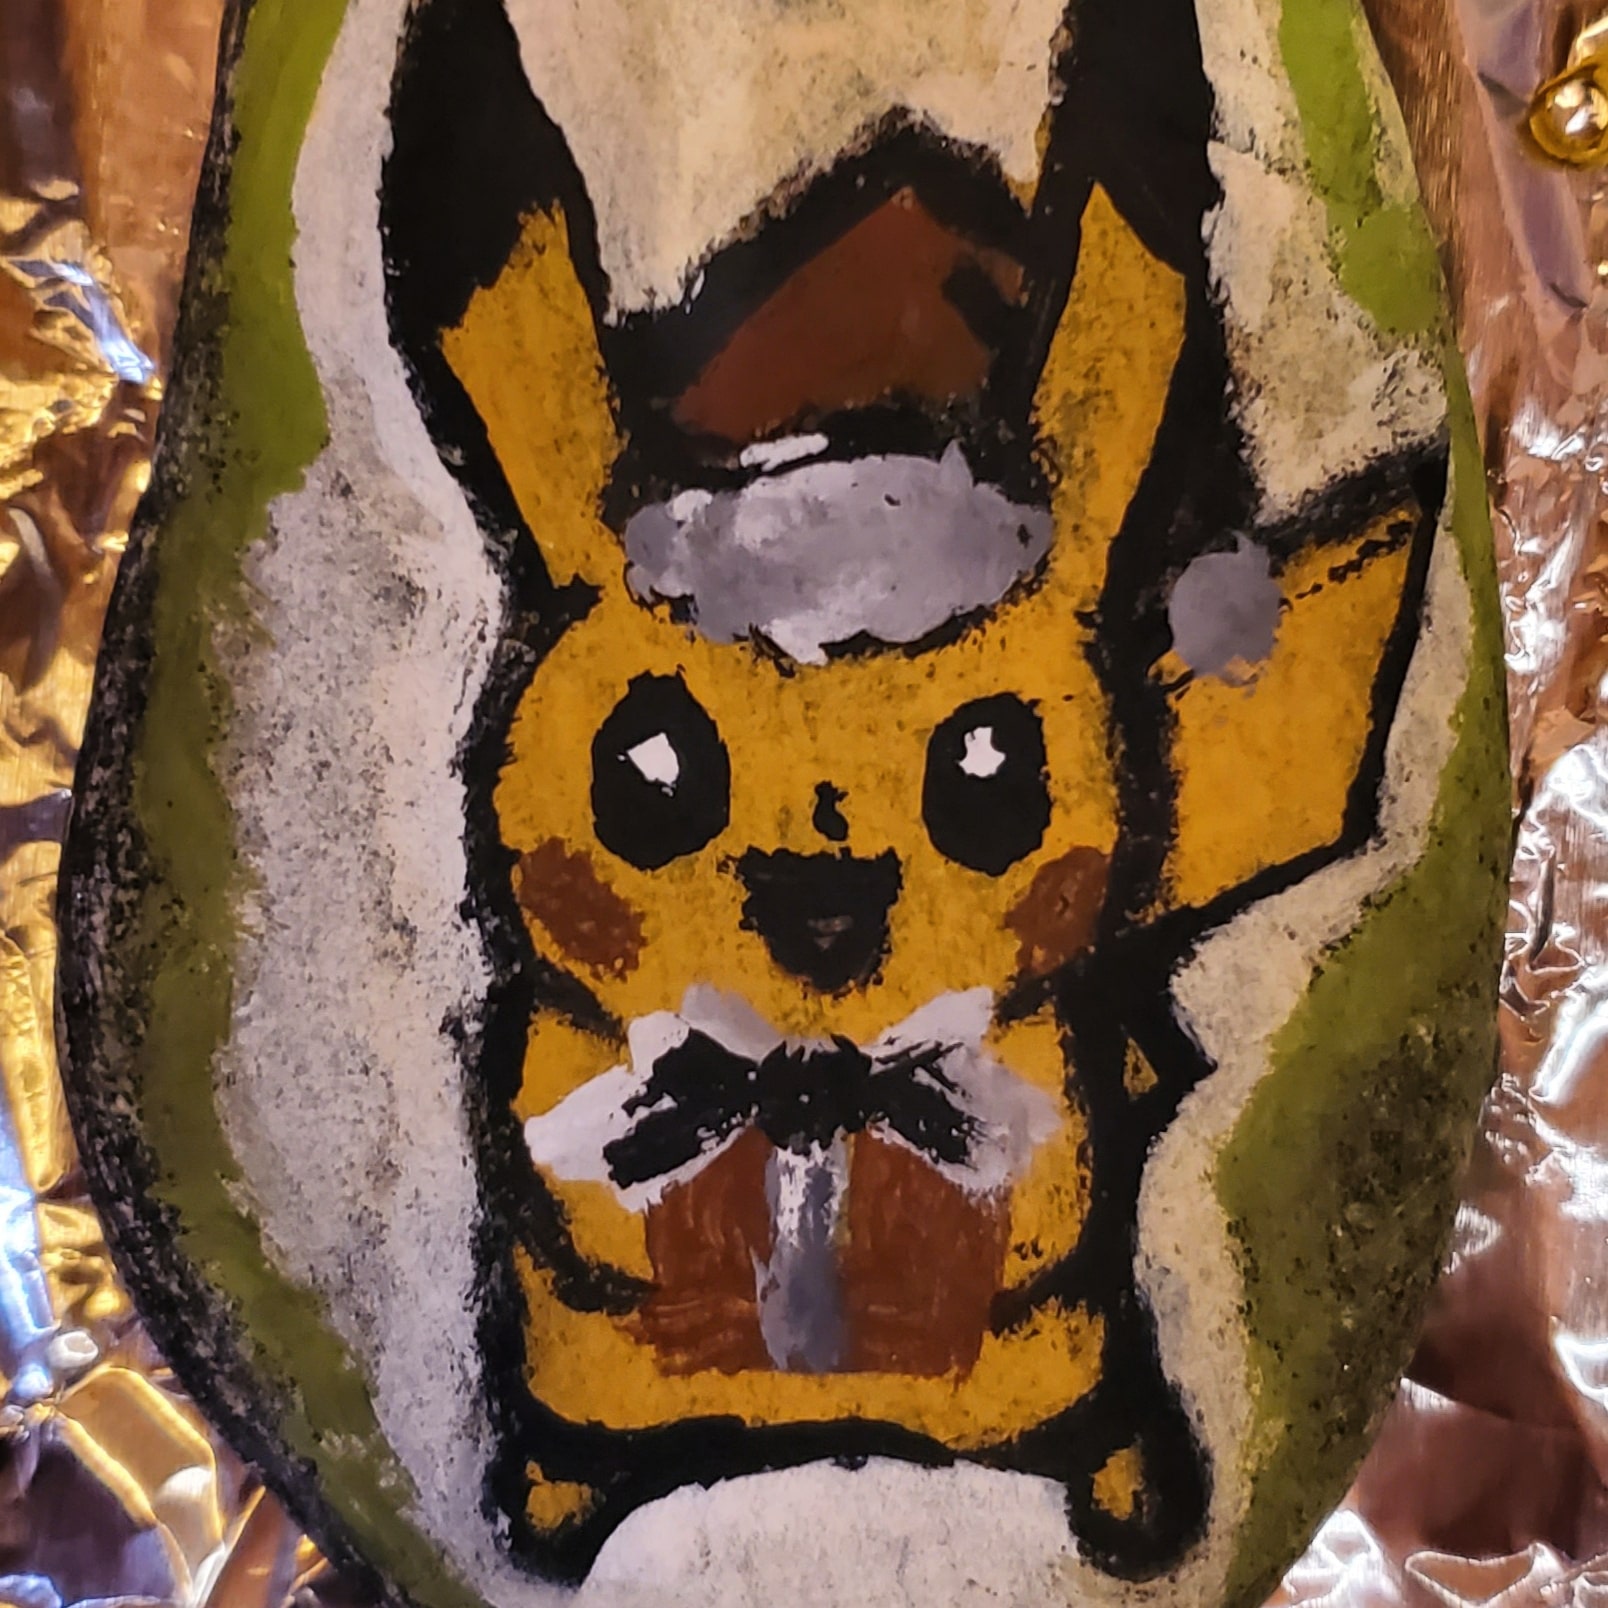 Nft Waterpainted Pikachu on rock